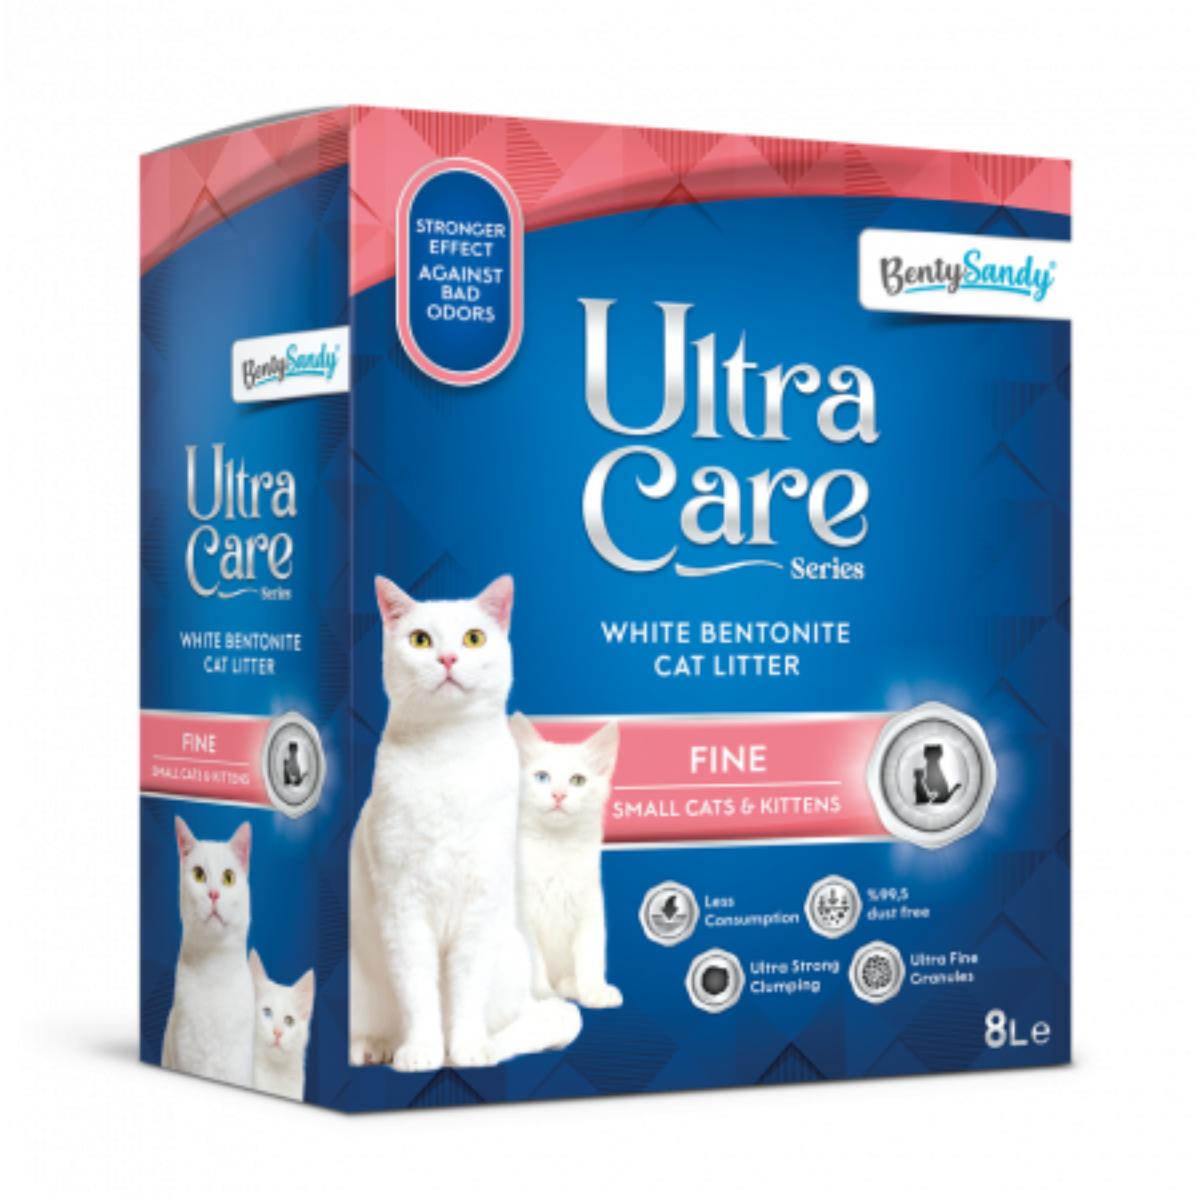 BENTY SANDY Ultra Care Fine, Floral, așternut igienic pisici, granule, bentonită, aglomerant, neutralizare mirosuri, 8l